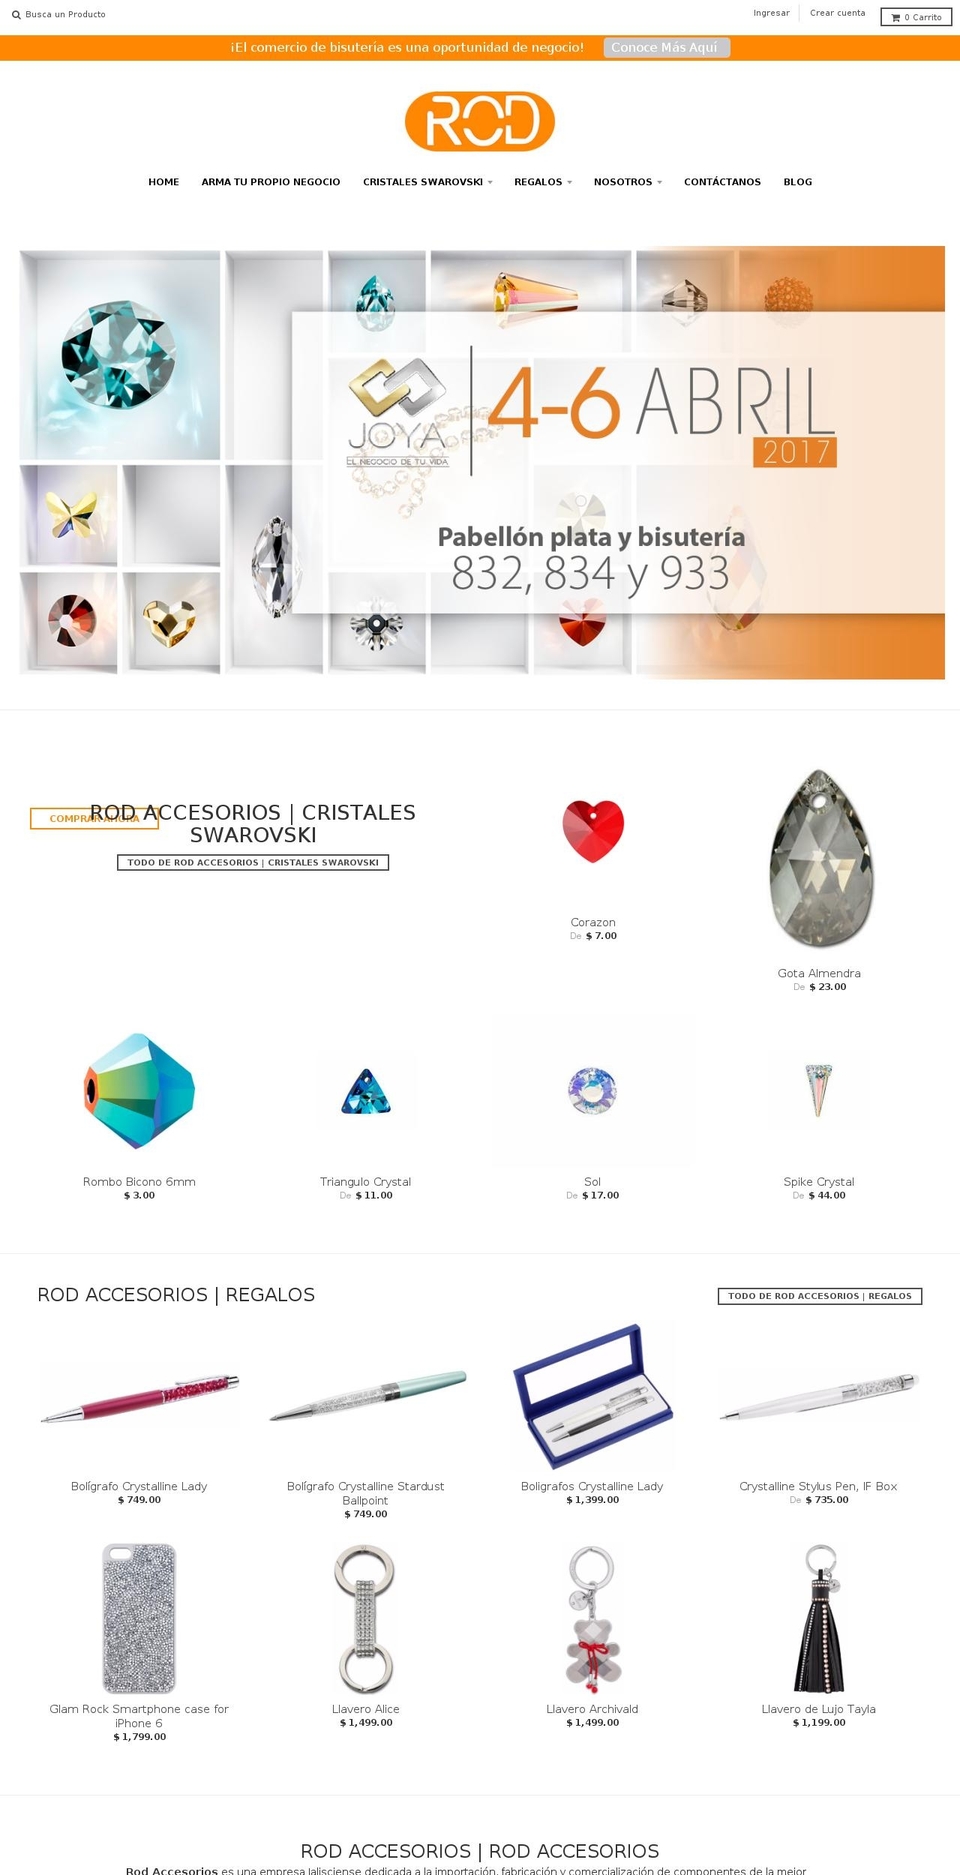 rodaccesorios.com.mx shopify website screenshot